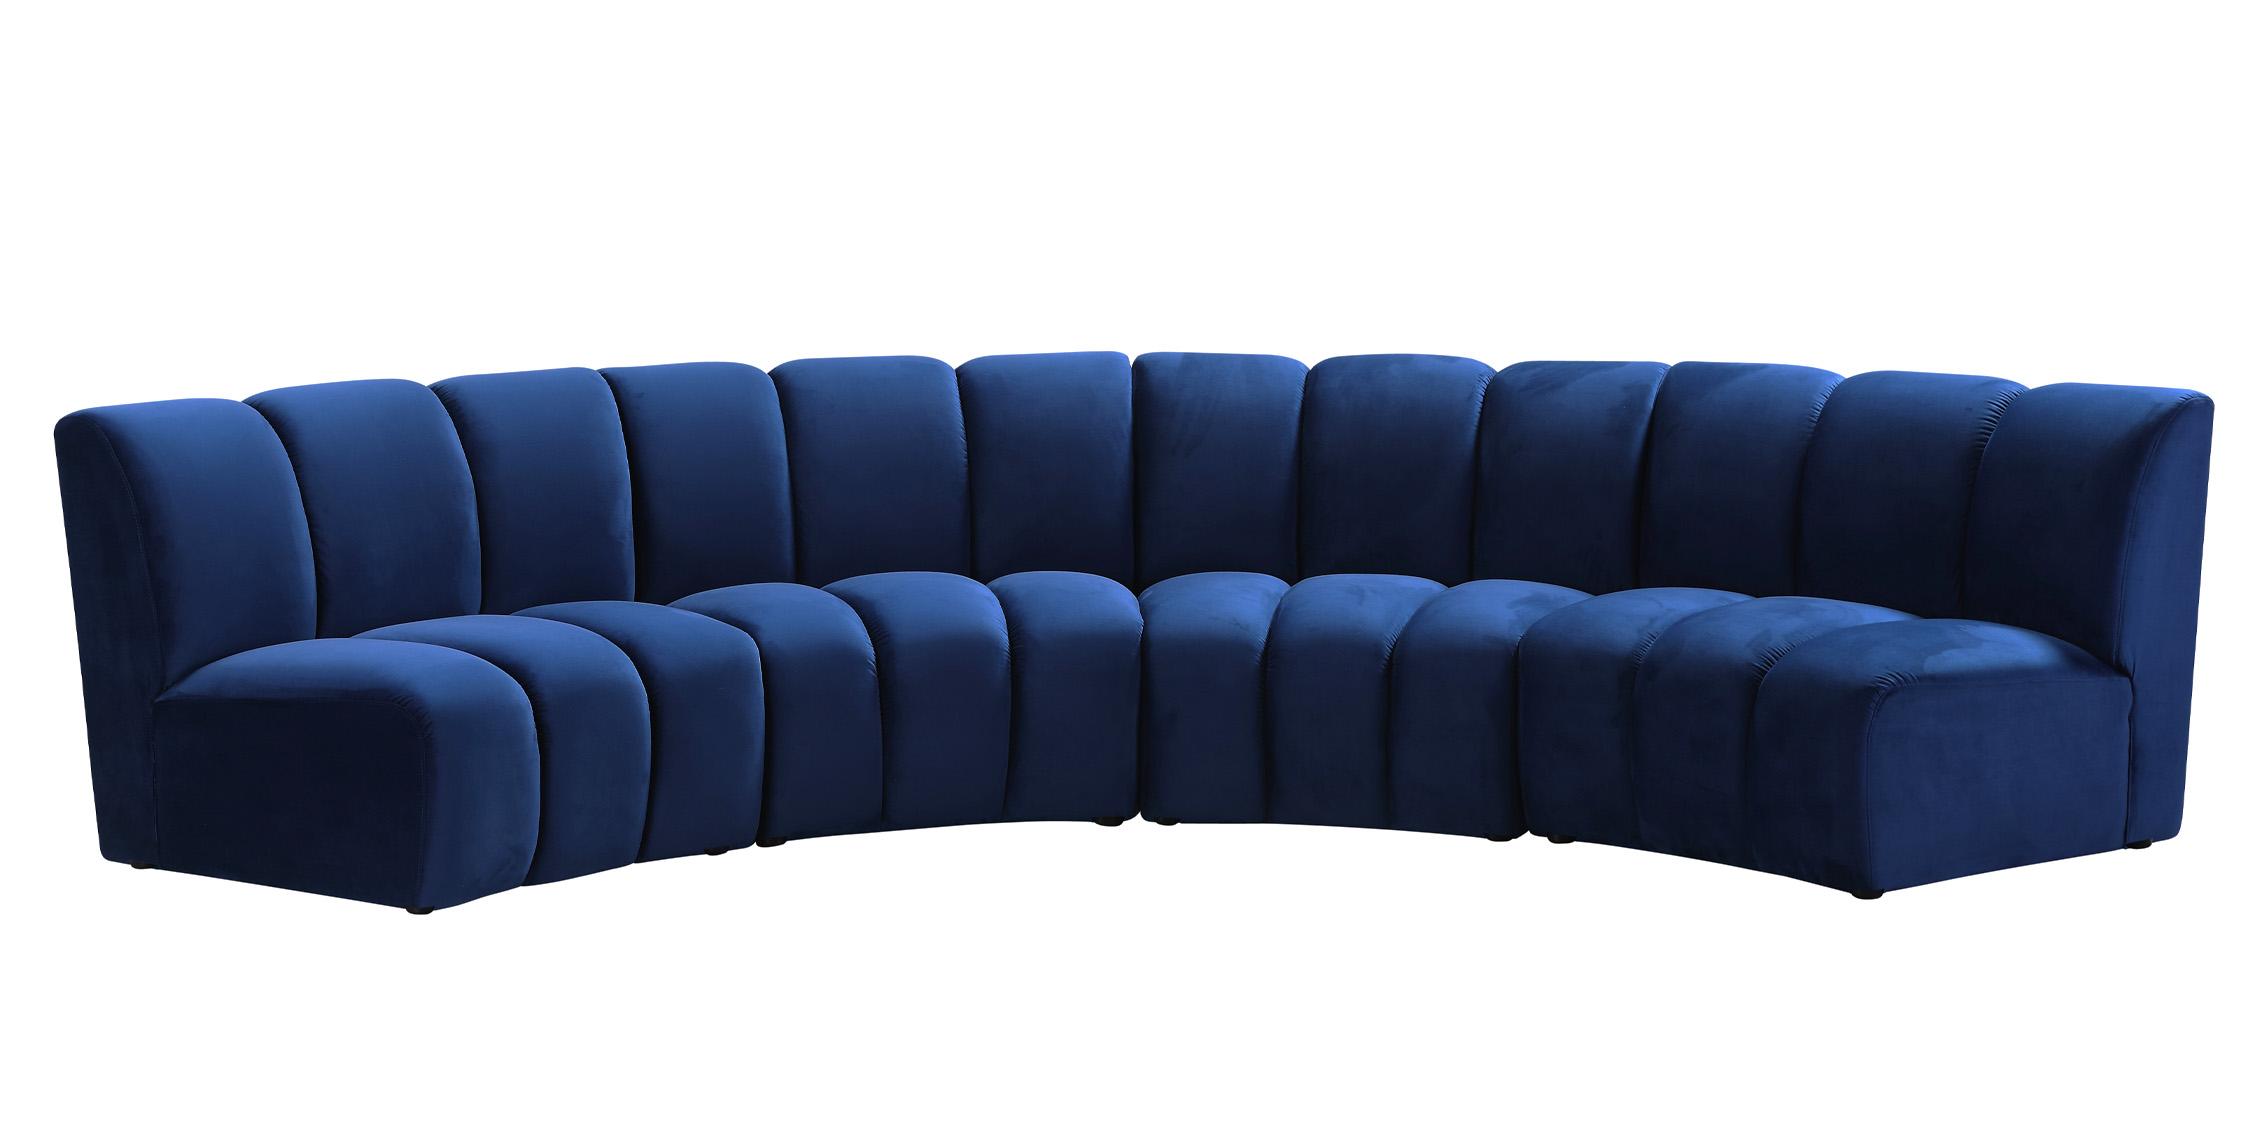 

    
638Navy-4PC Meridian Furniture Modular Sectional Sofa
